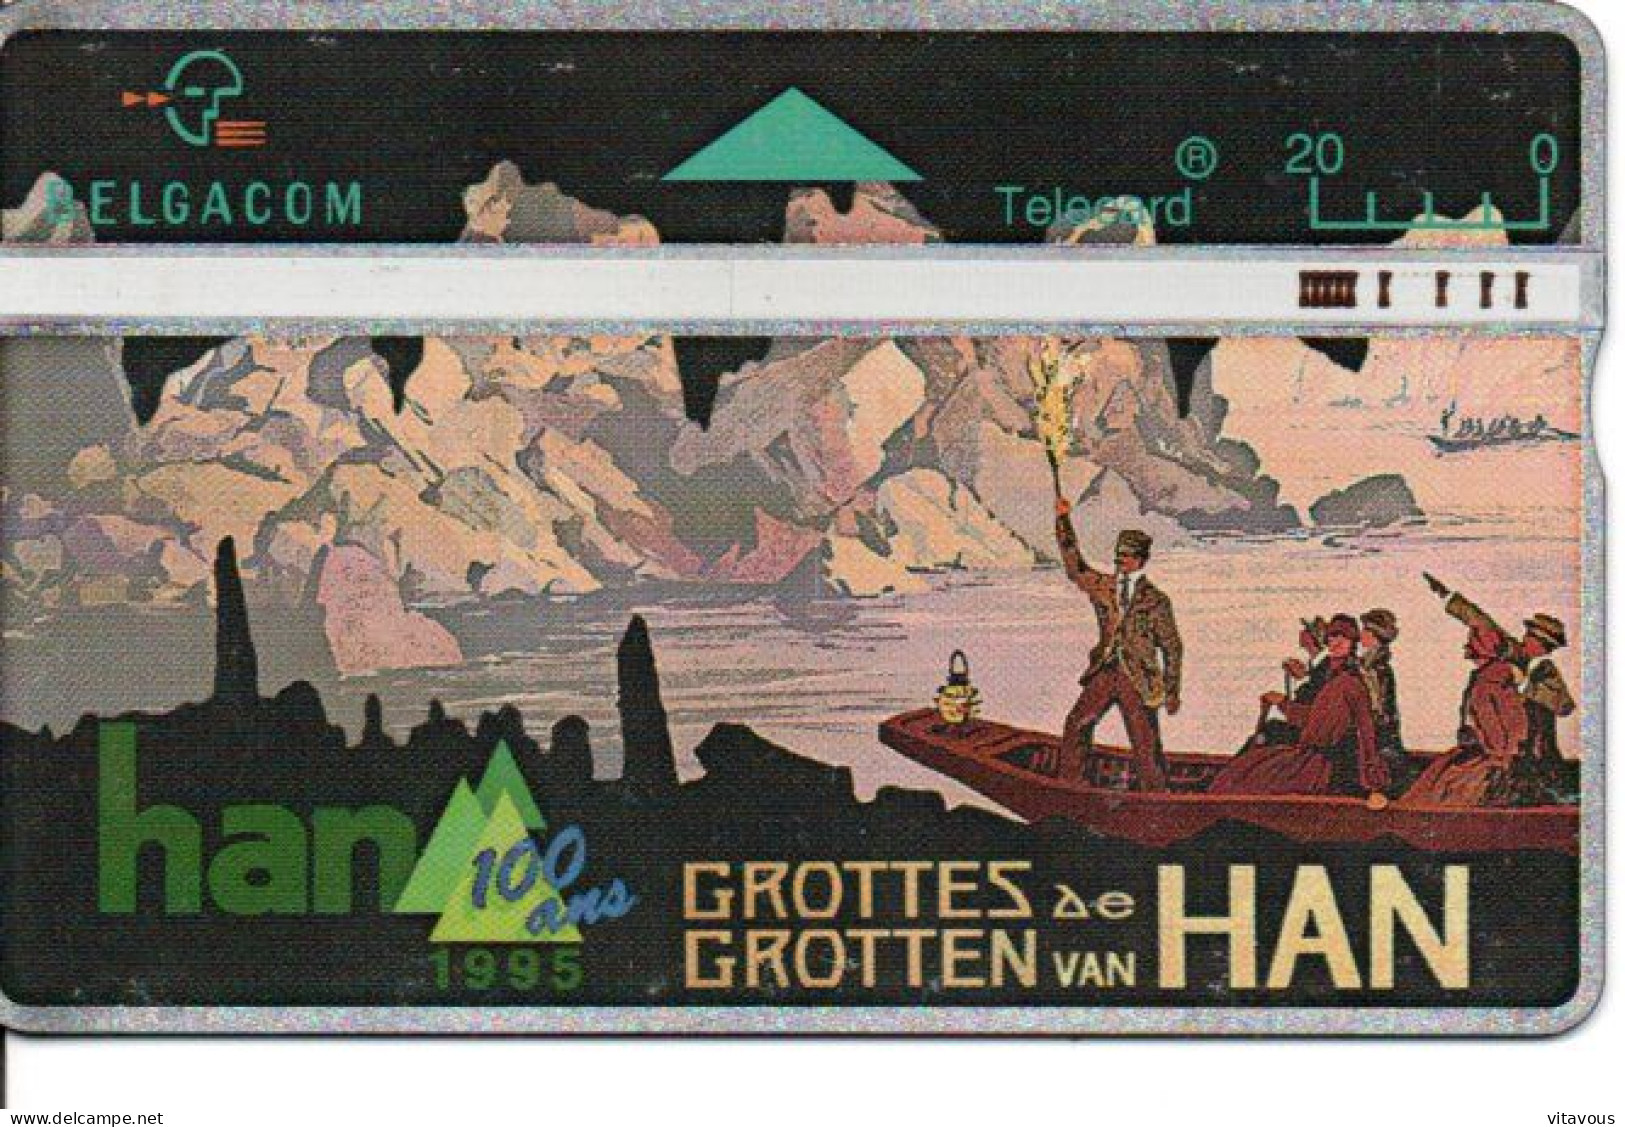 Grotte Van HAN Télécarte Belgique Phonecard (B 773) - Zonder Chip